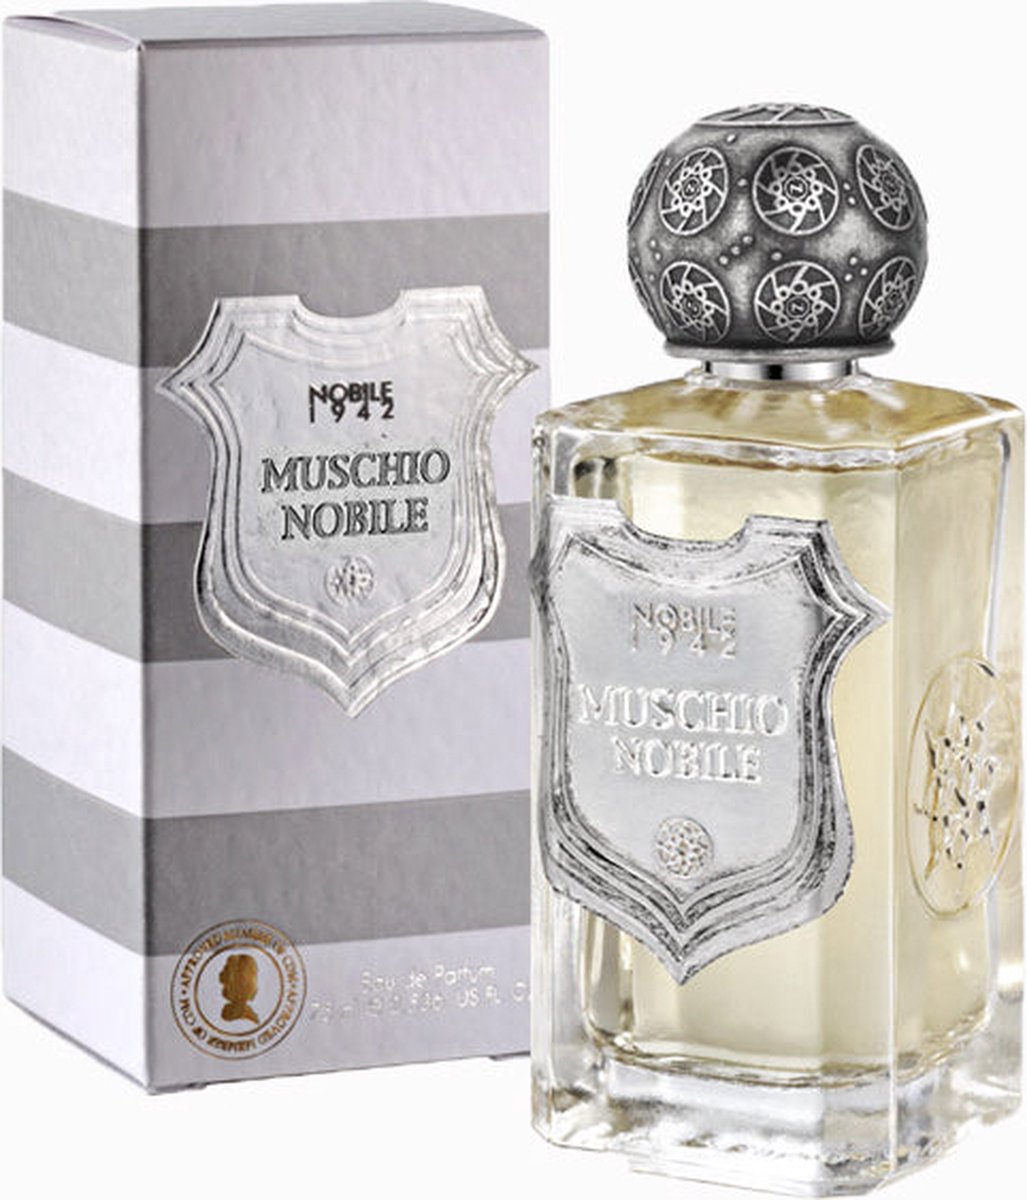 NOBILE 1942 - Muschio Nobile Eau de Parfum - 75 ml - eau de parfum